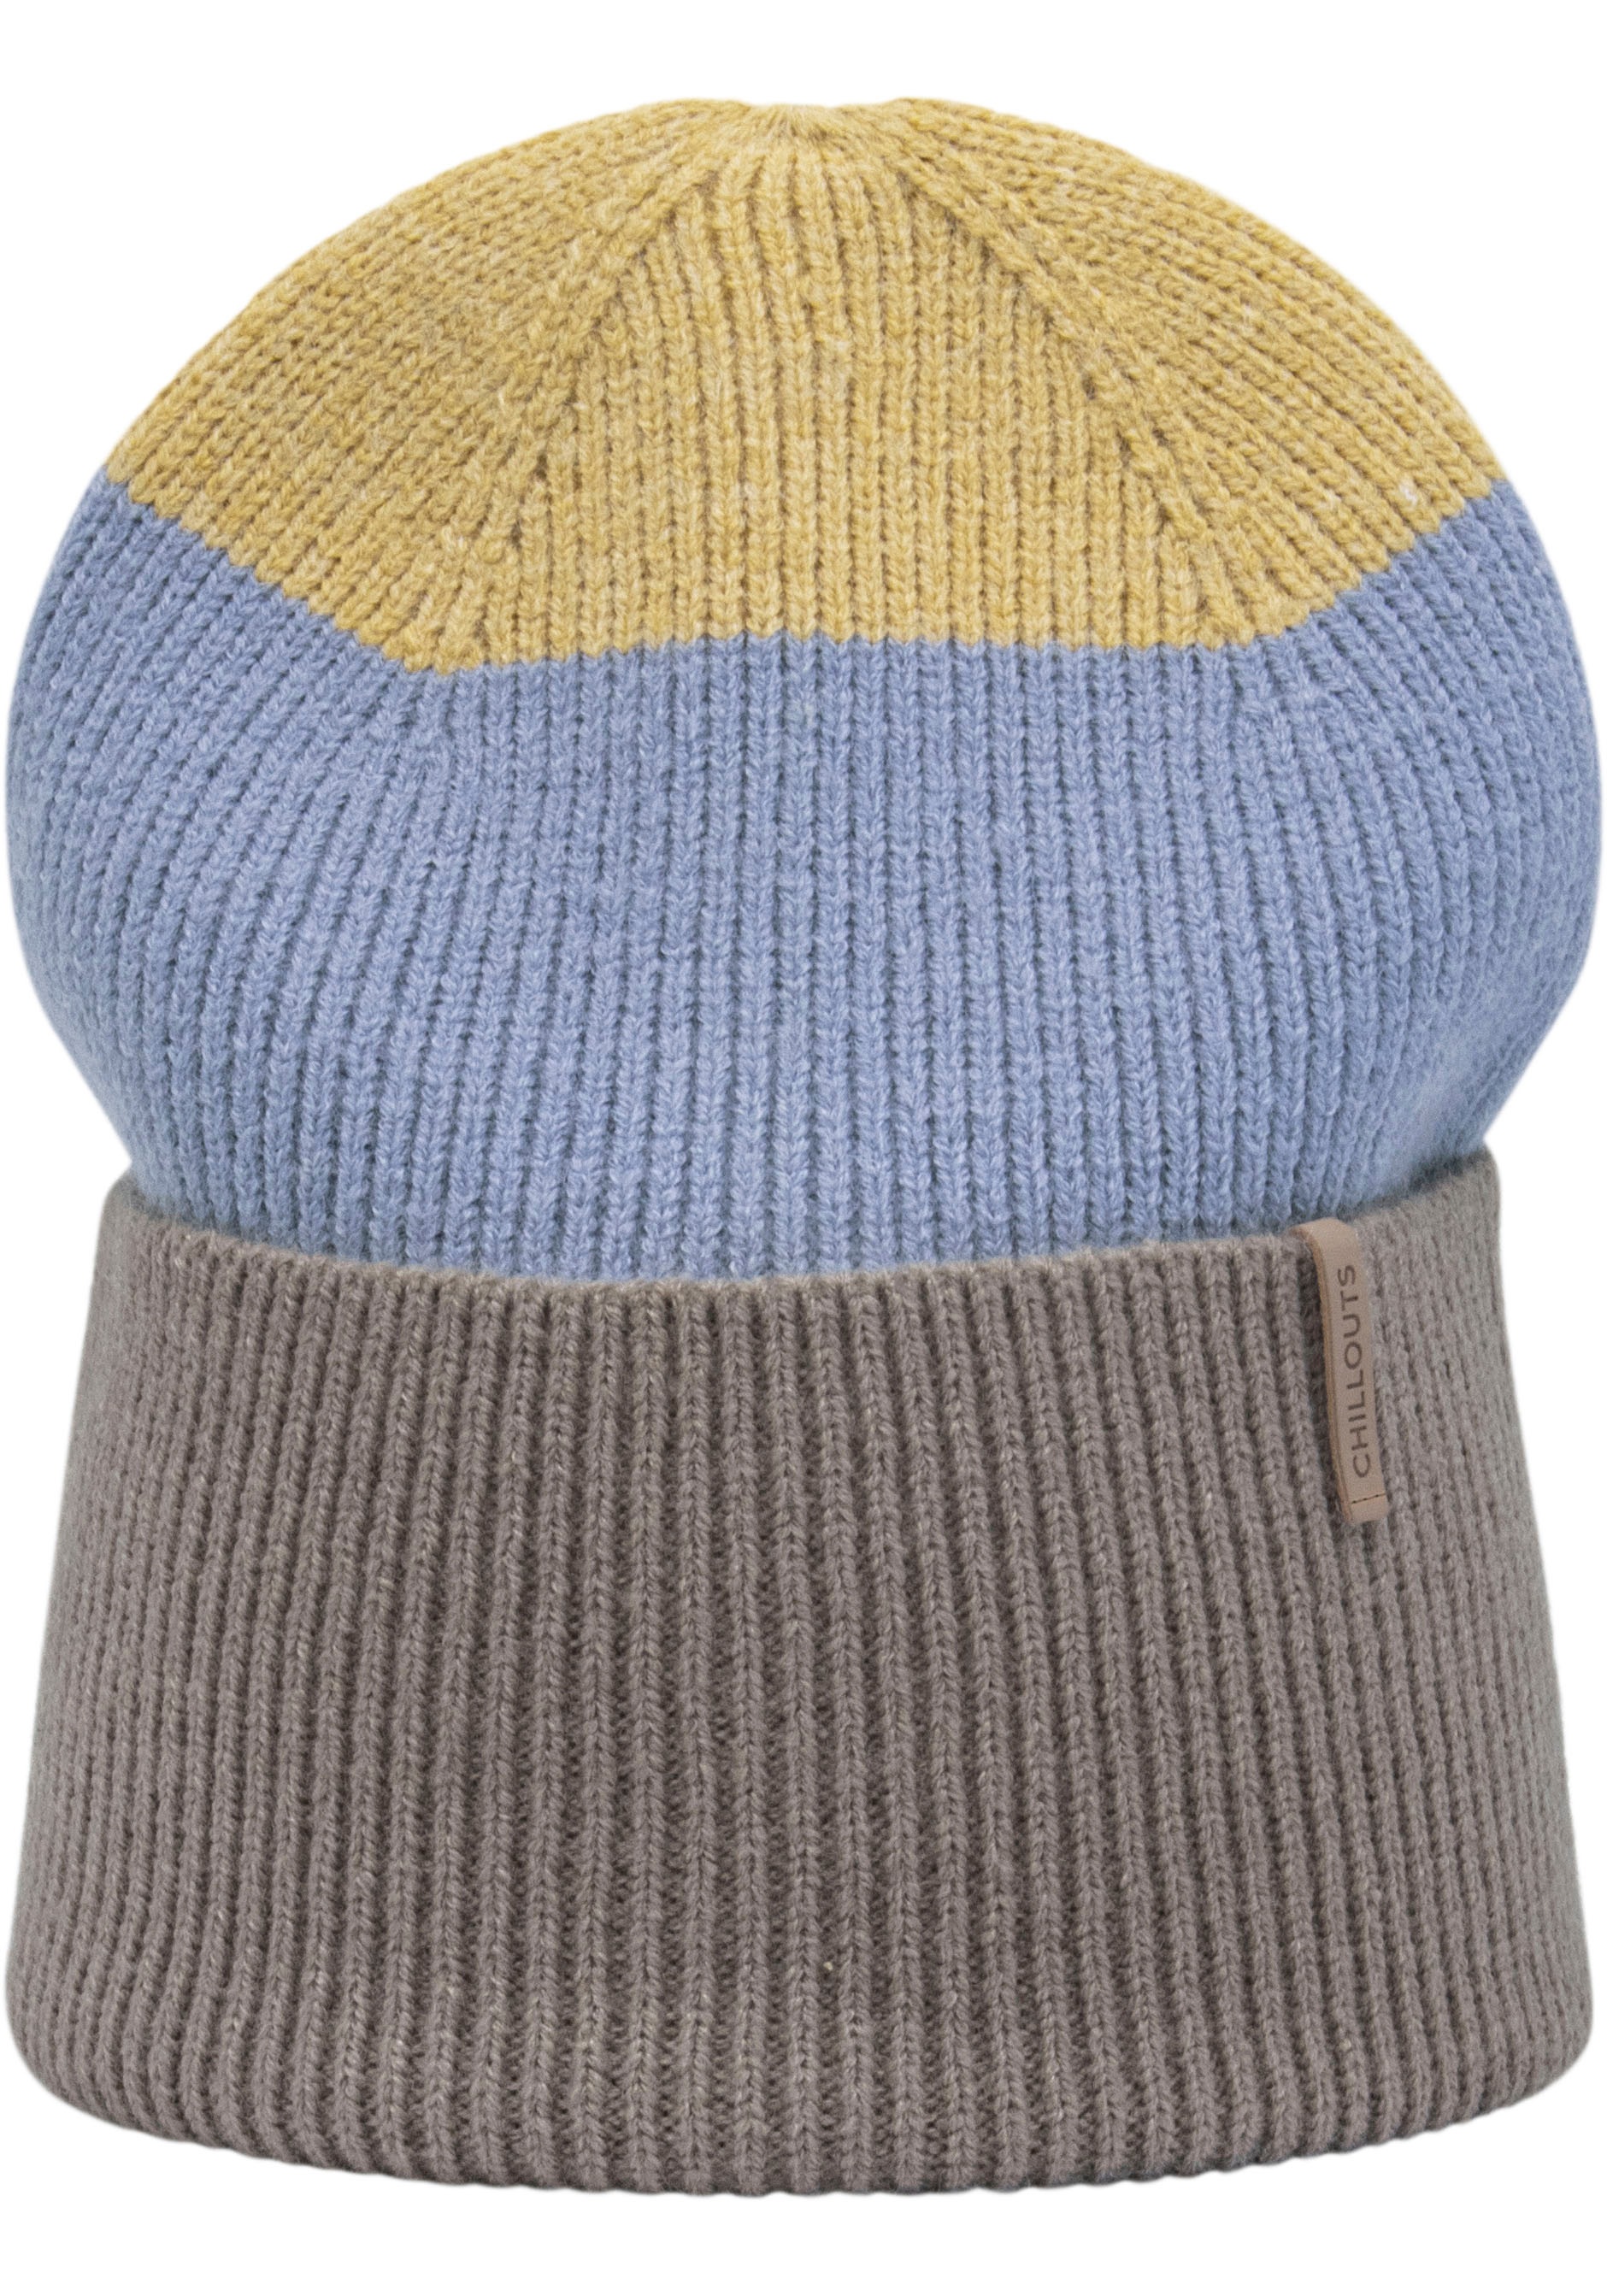 chillouts Strickmütze »Tamy Hat«, Rippenstrick, Blockstreifen